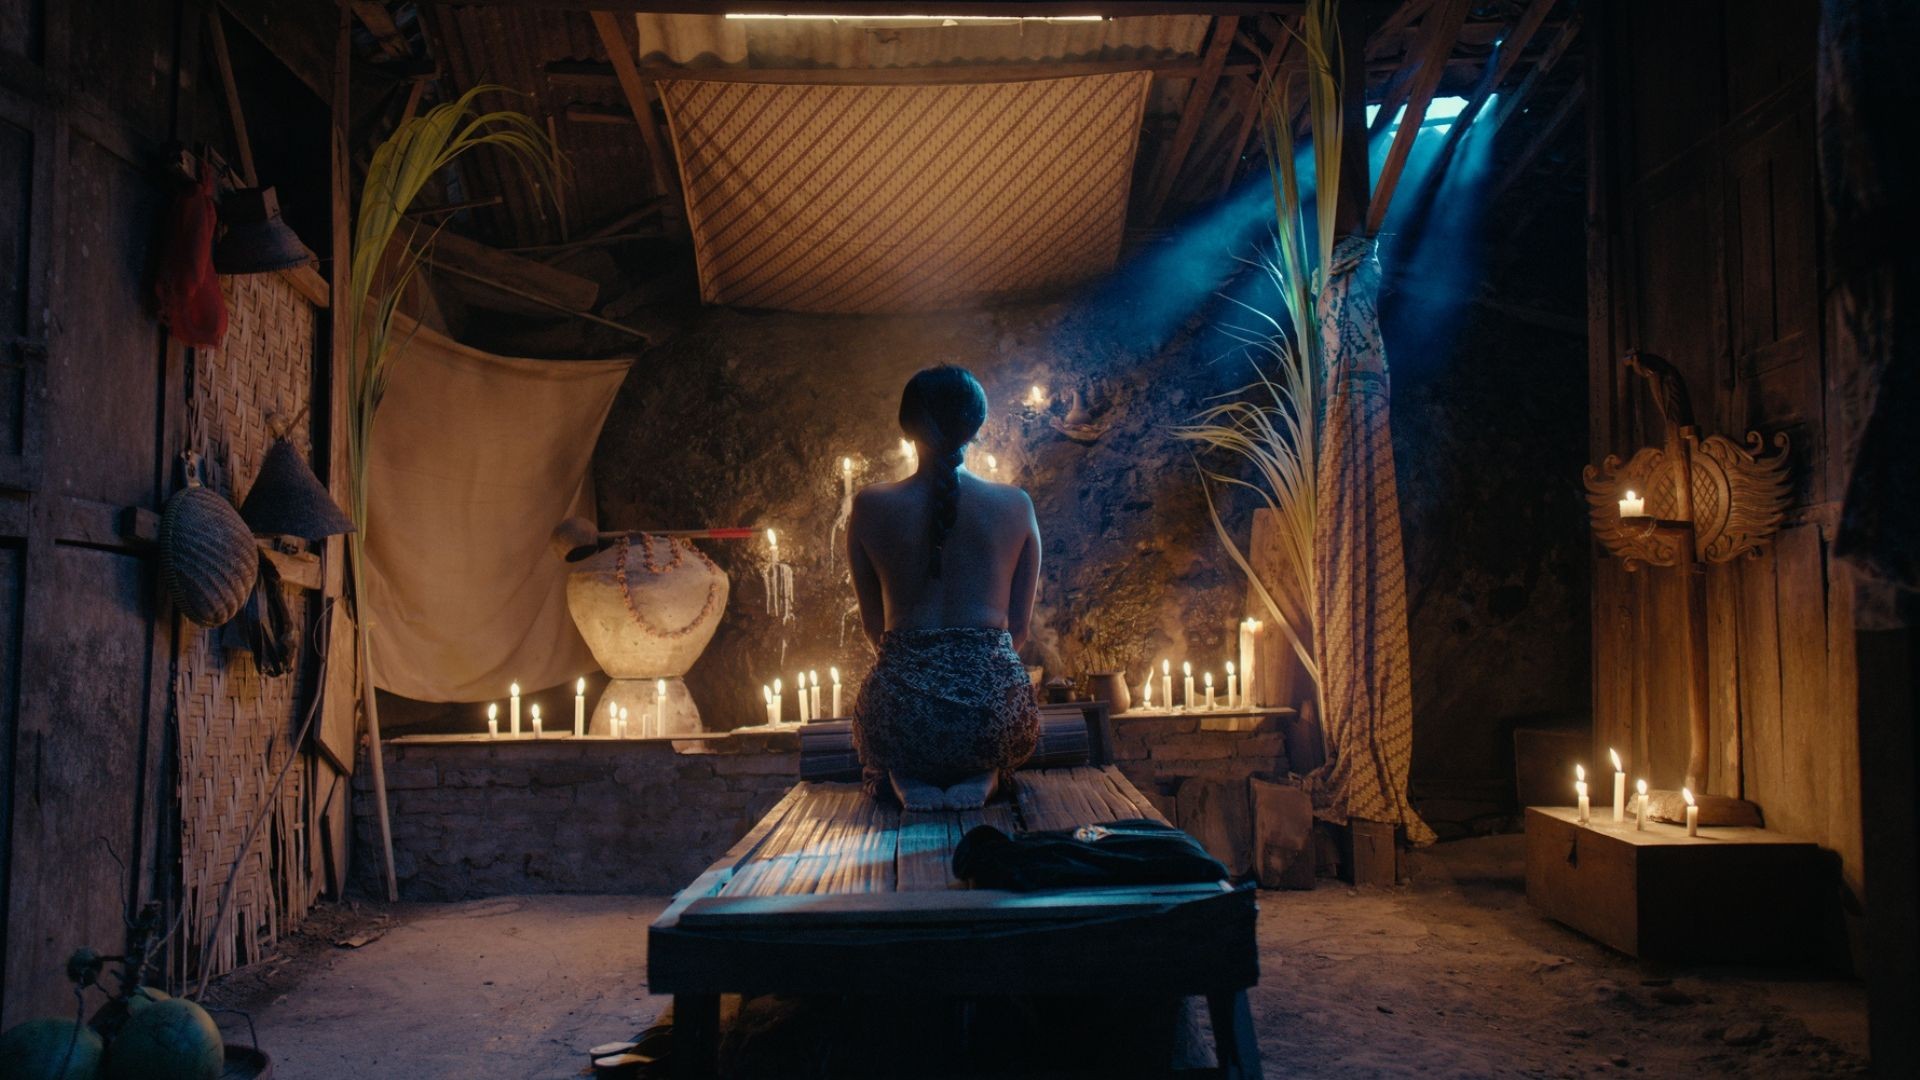 'Ma cây' phiên bản Indonesia tung teaser trailer lạnh gáy về cây xác người